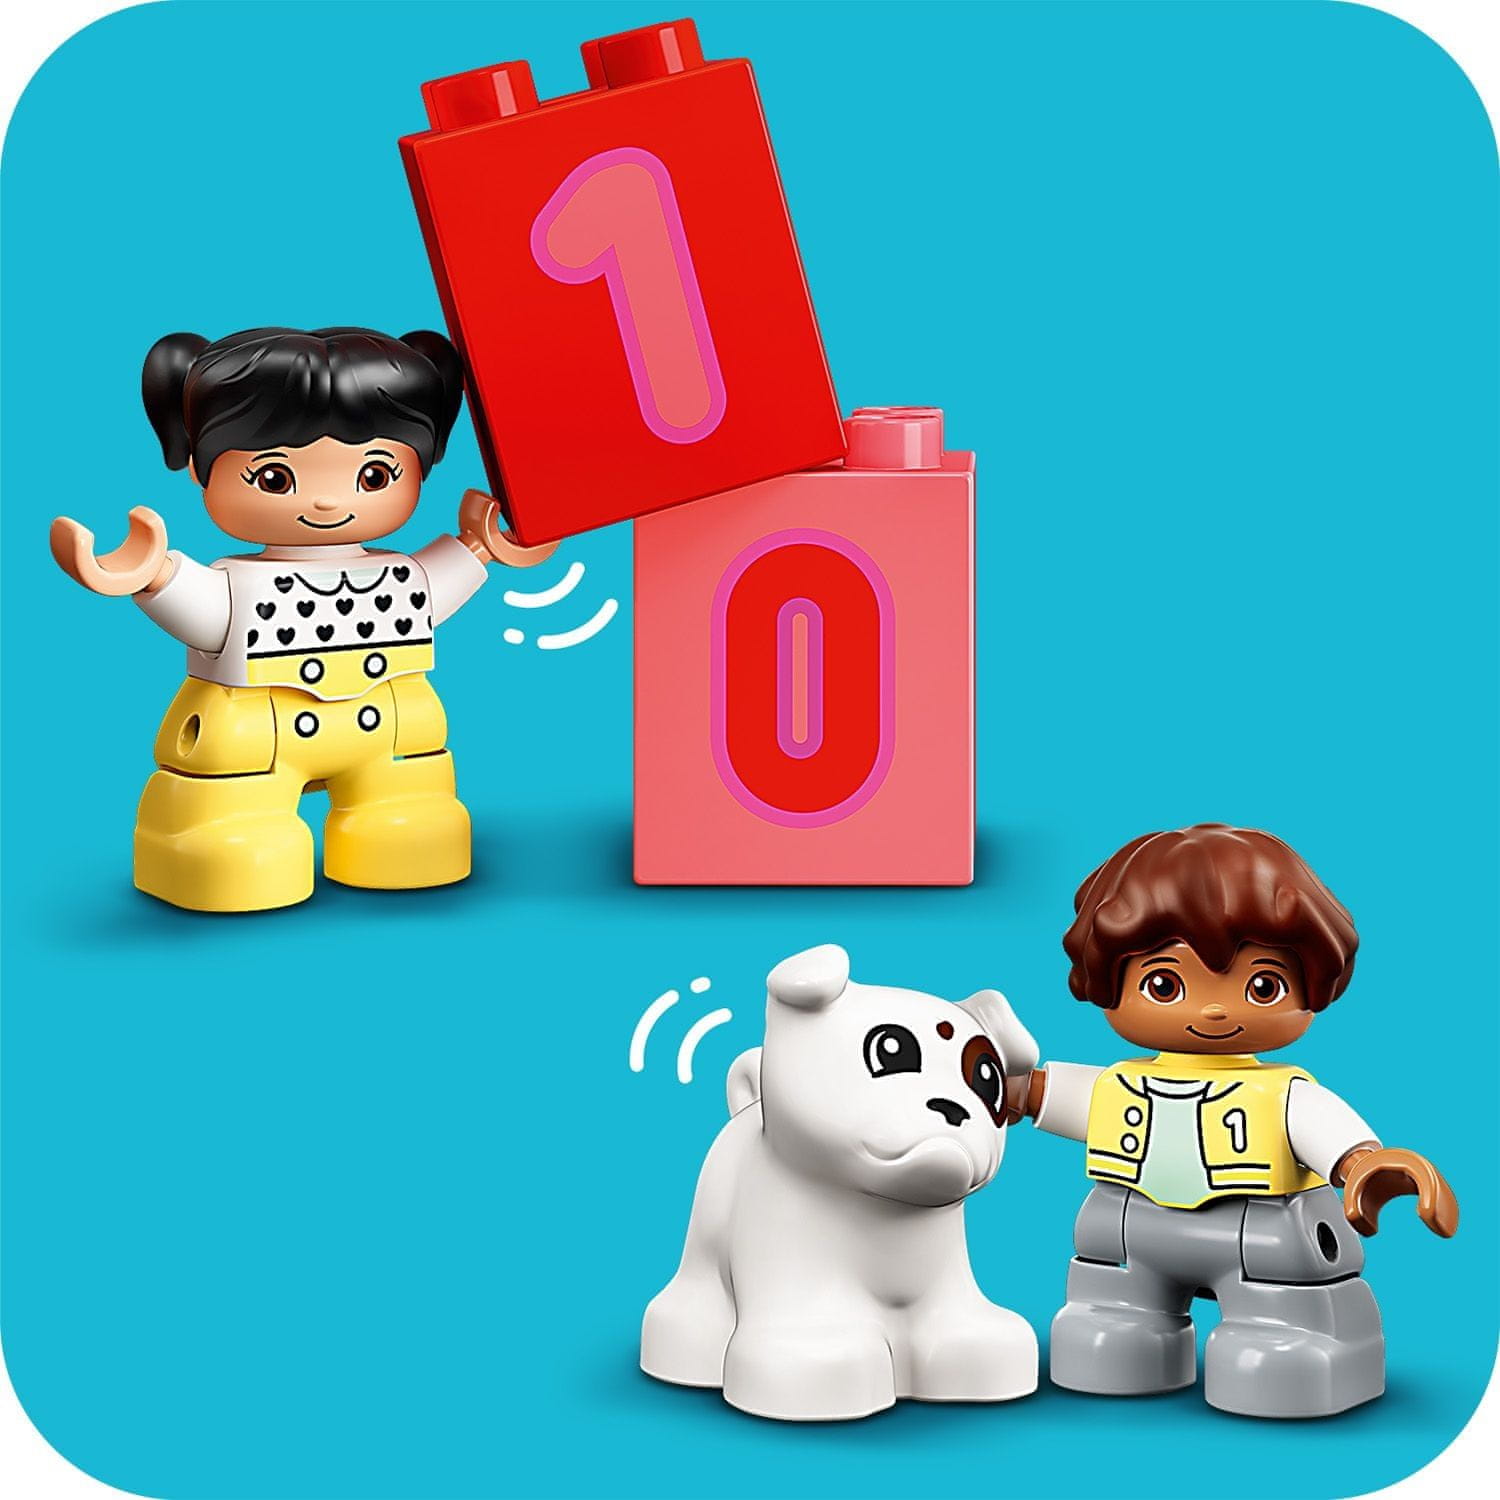 LEGO DUPLO 10954 Vláčik s číslami - Učíme sa počítať